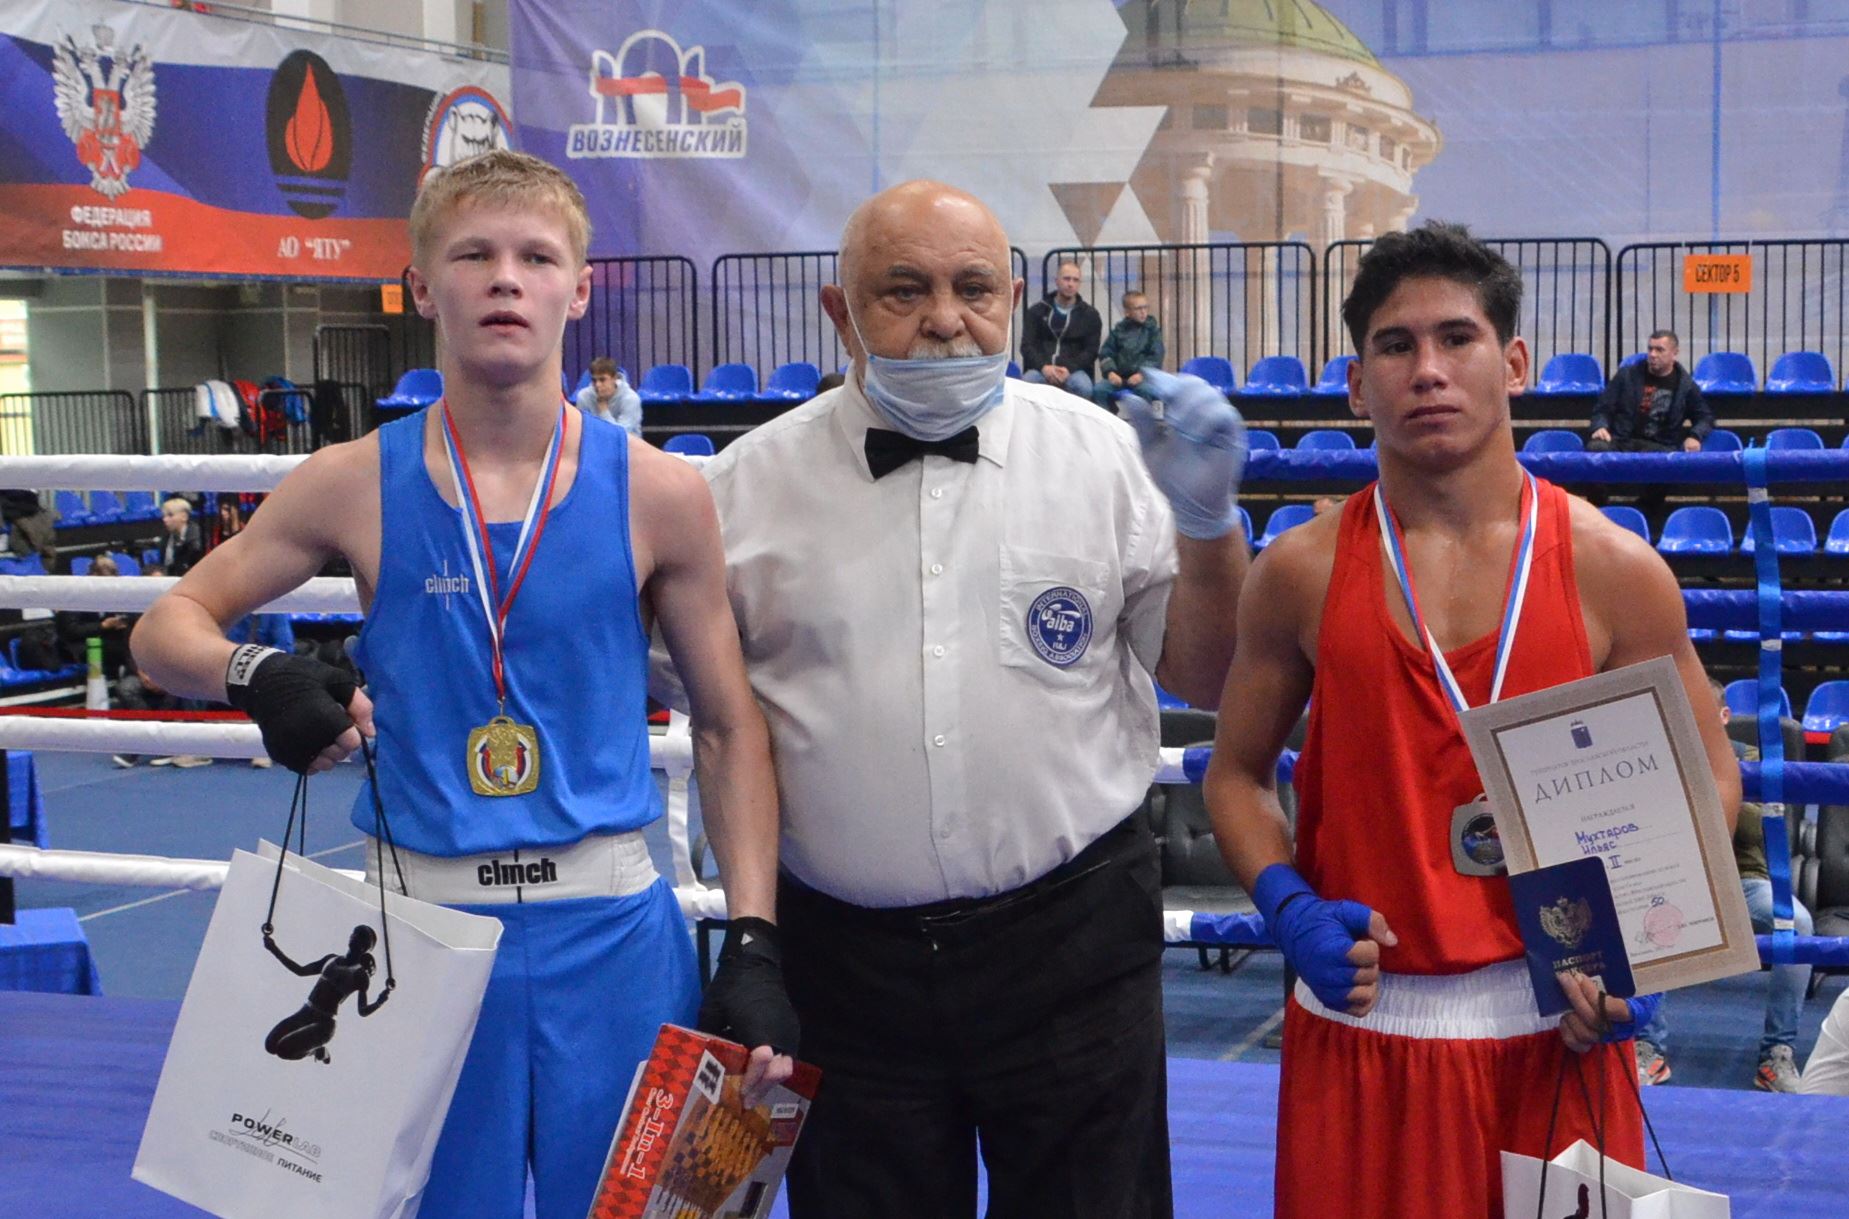 Юные костромские боксеры результативно поколотили соперников на всероссийских соревнованиях